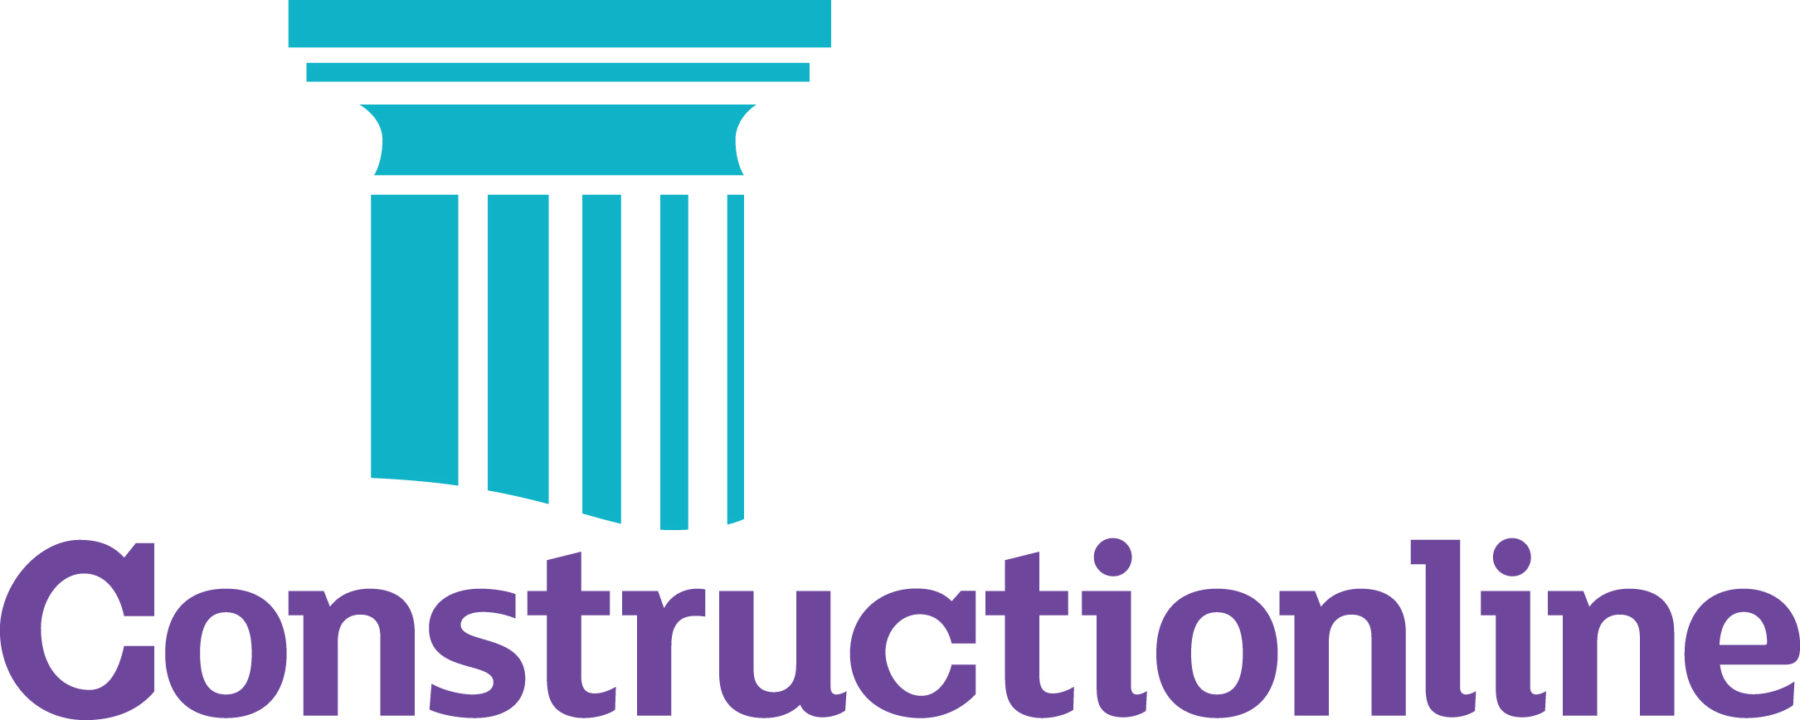 Constructionline-logo.jpg